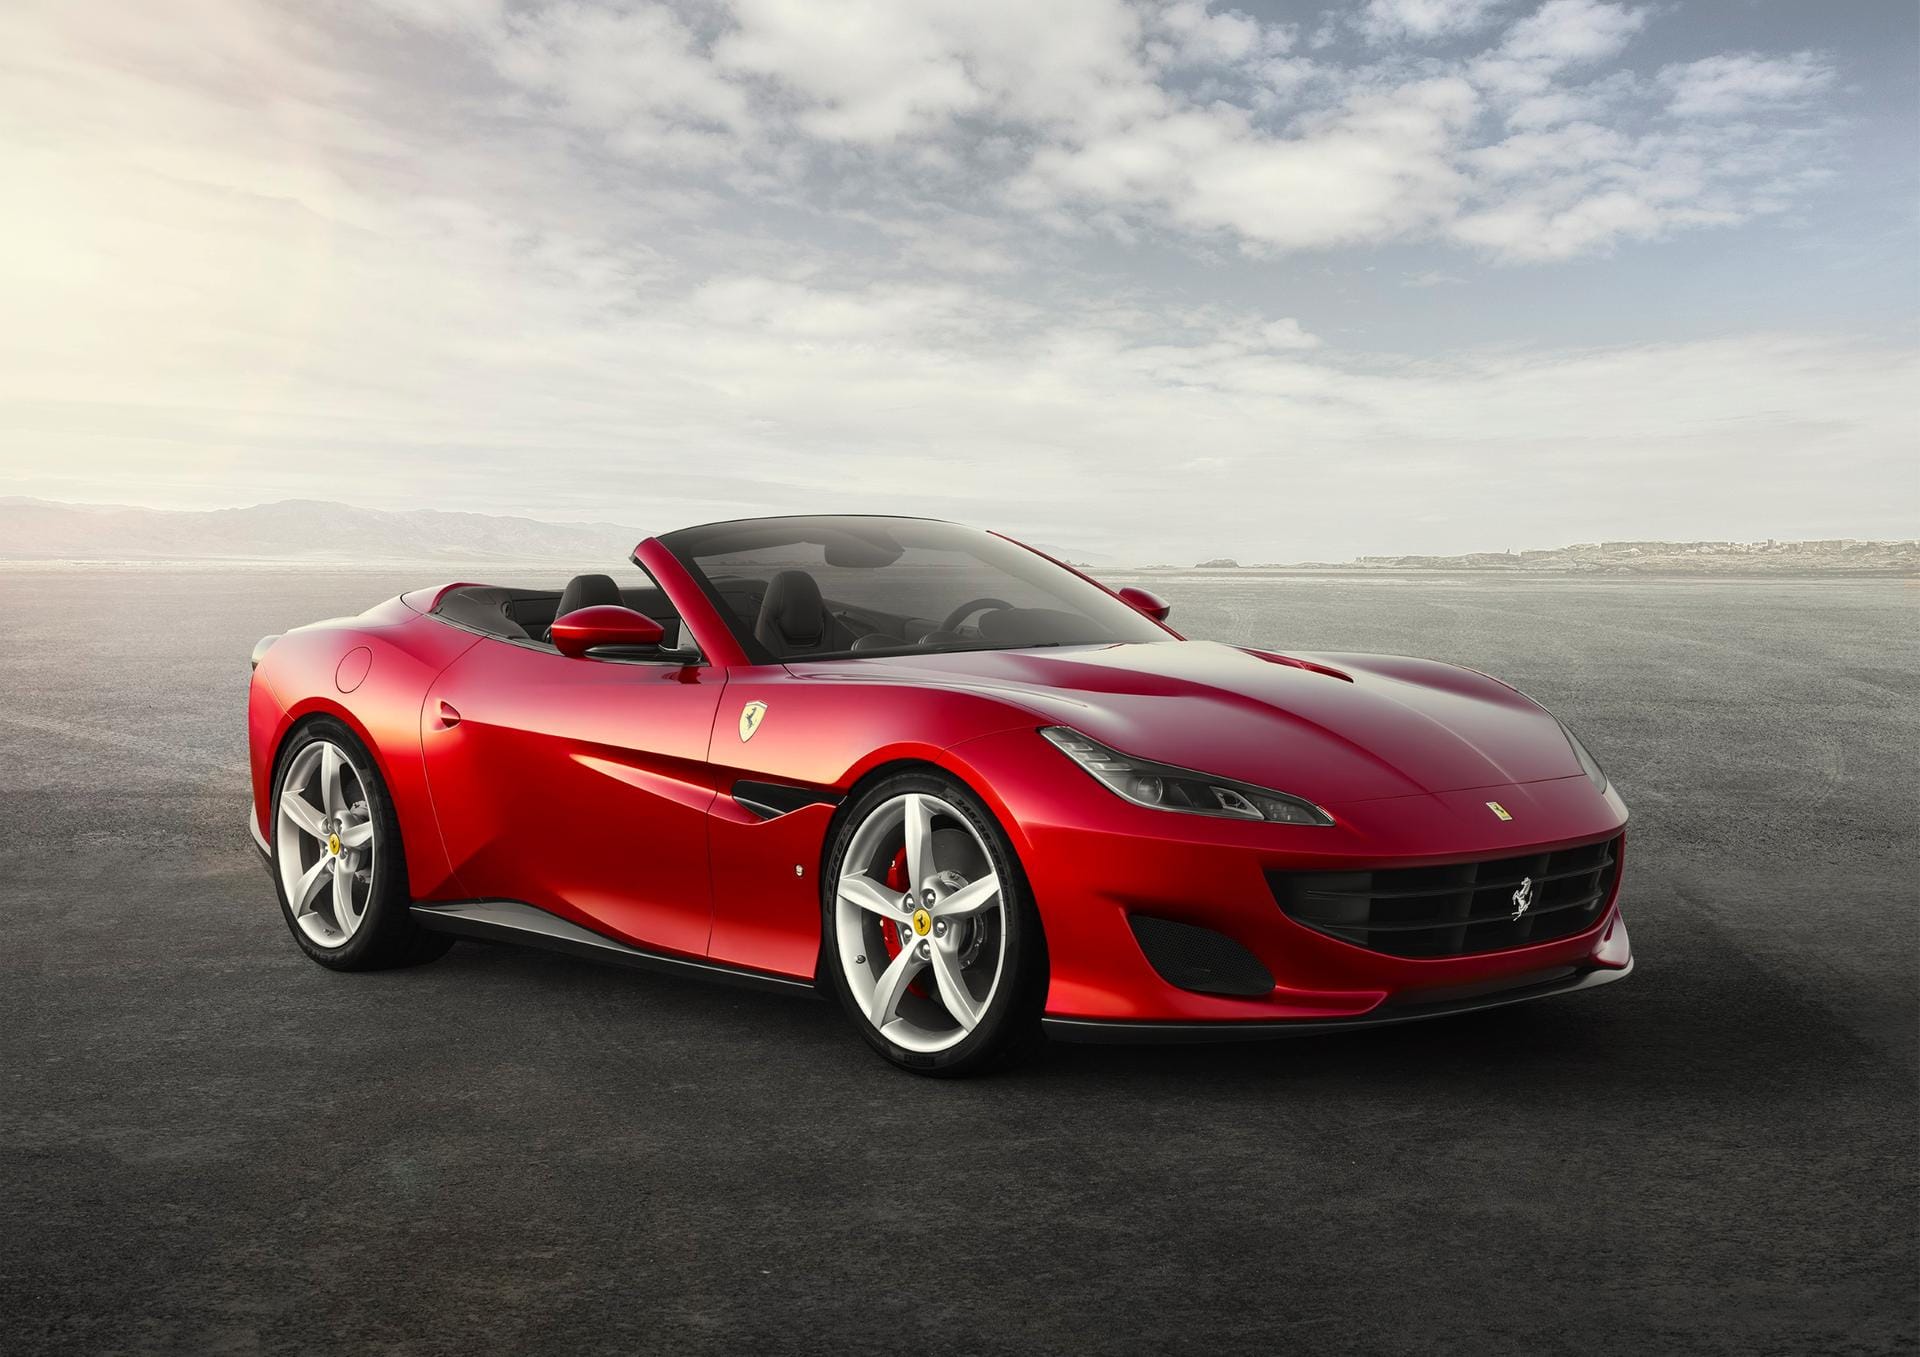 Mit dem Portofino stellt Ferrari den Nachfolger des California T vor.